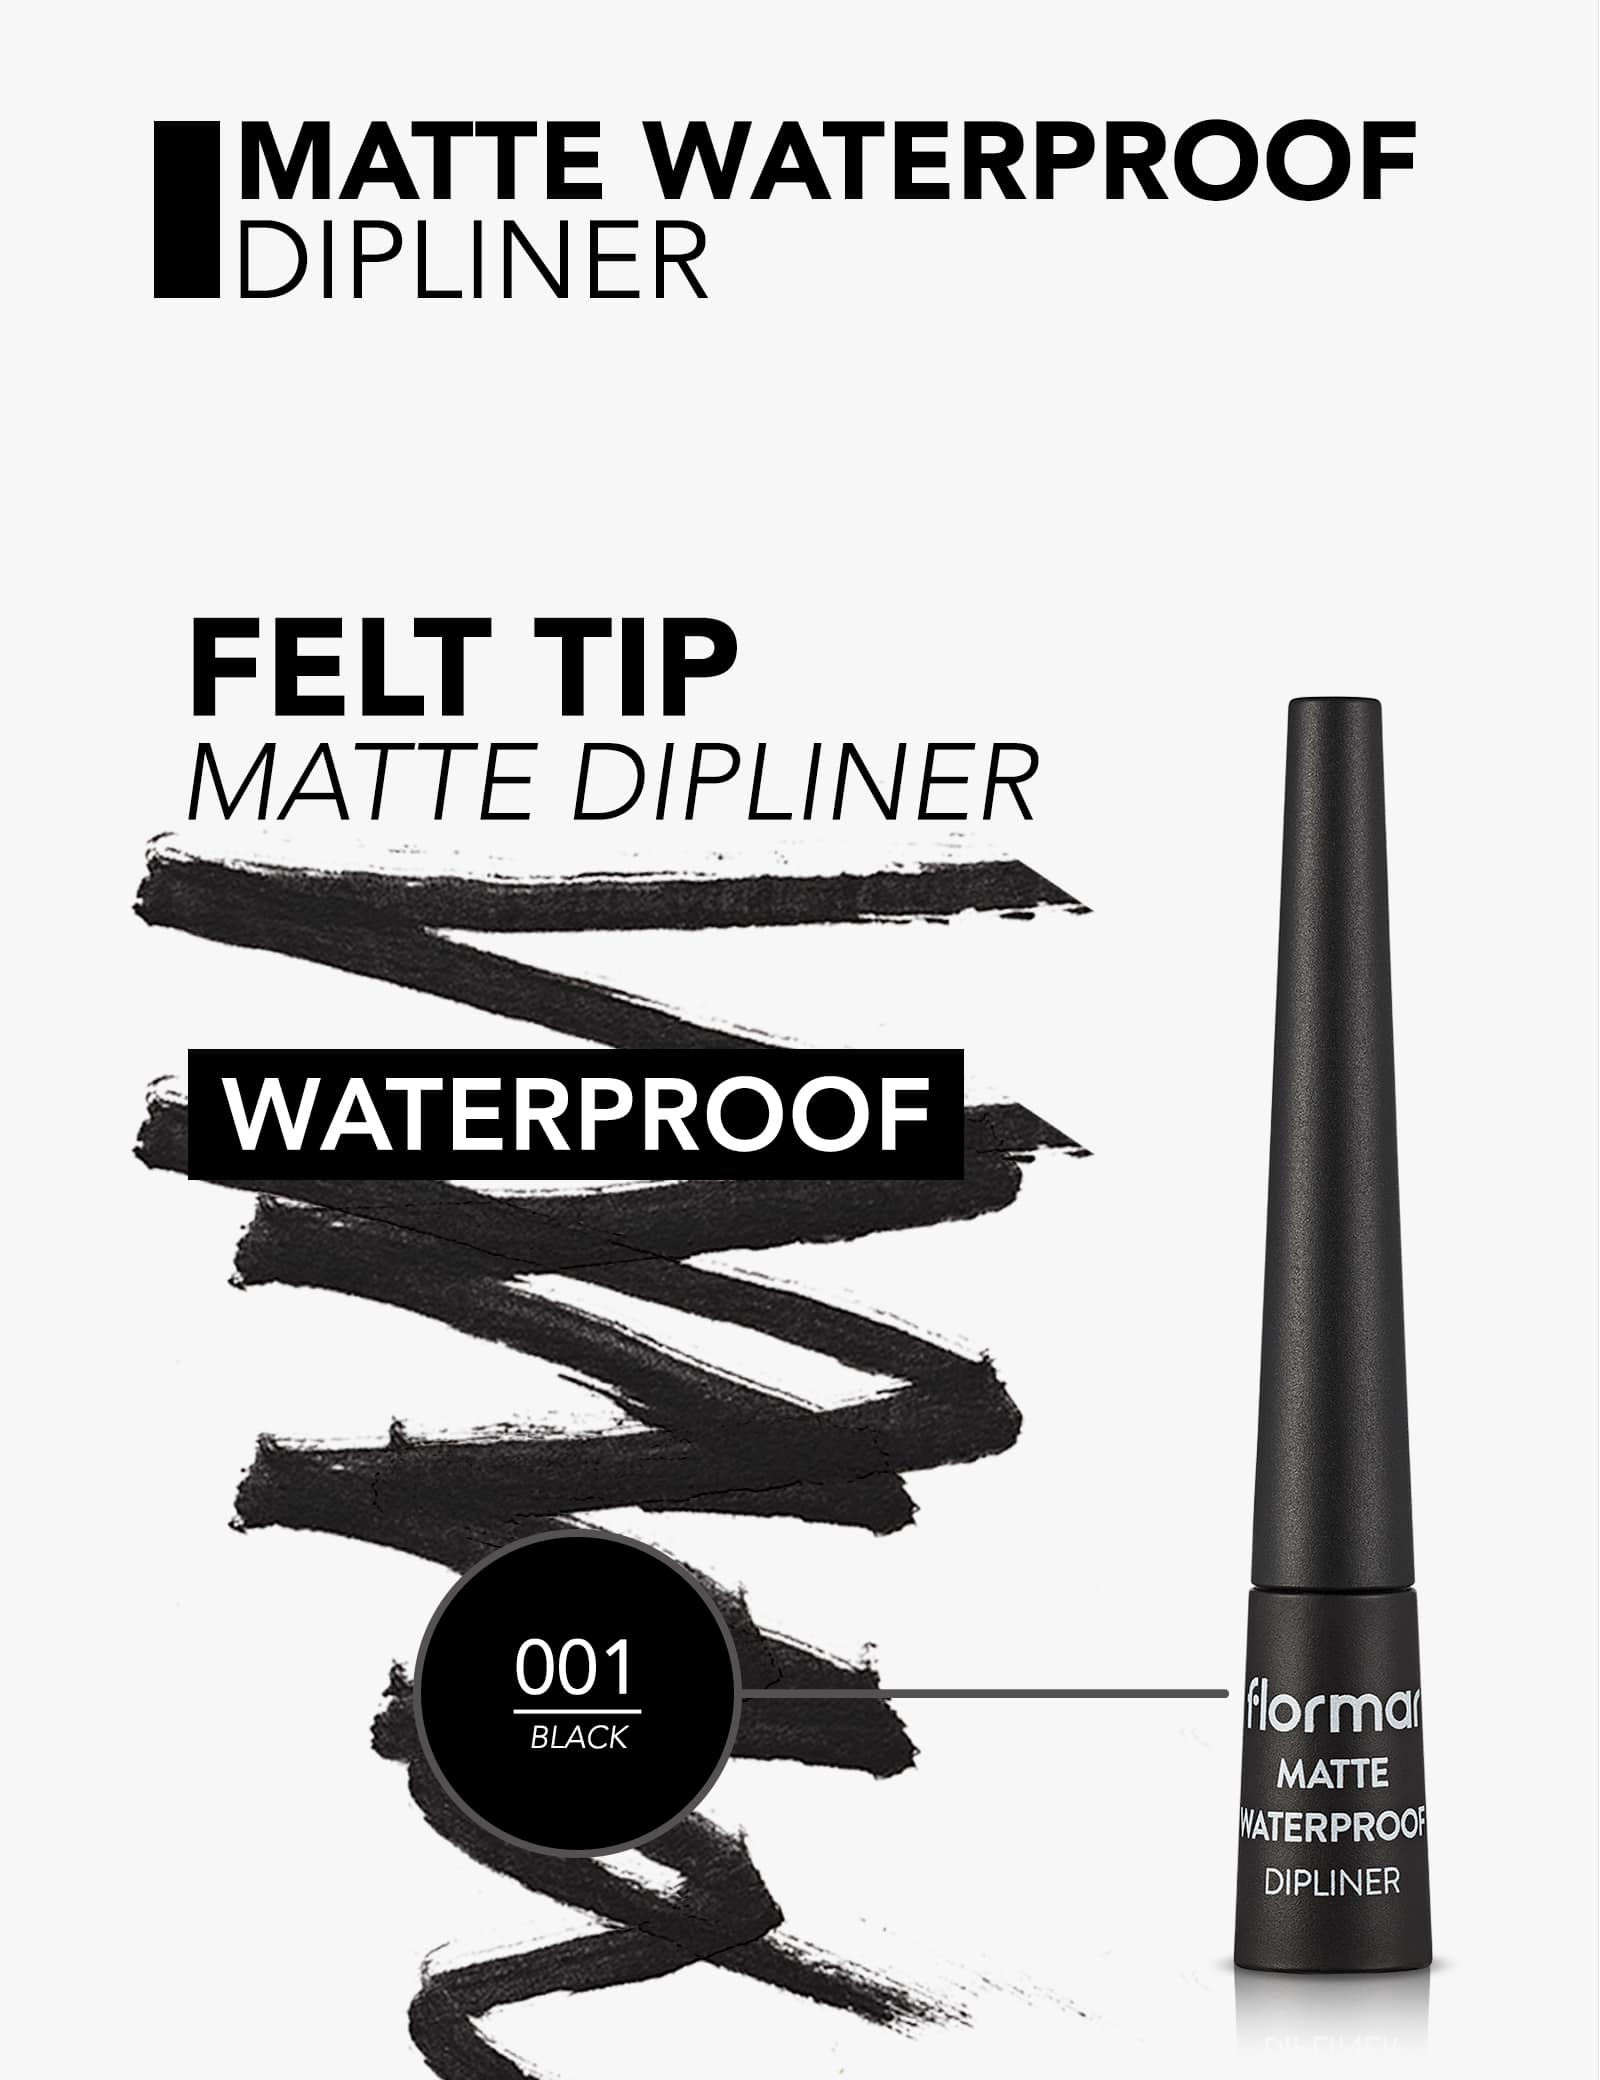 Flormar Matte Waterproof Dipliner Black